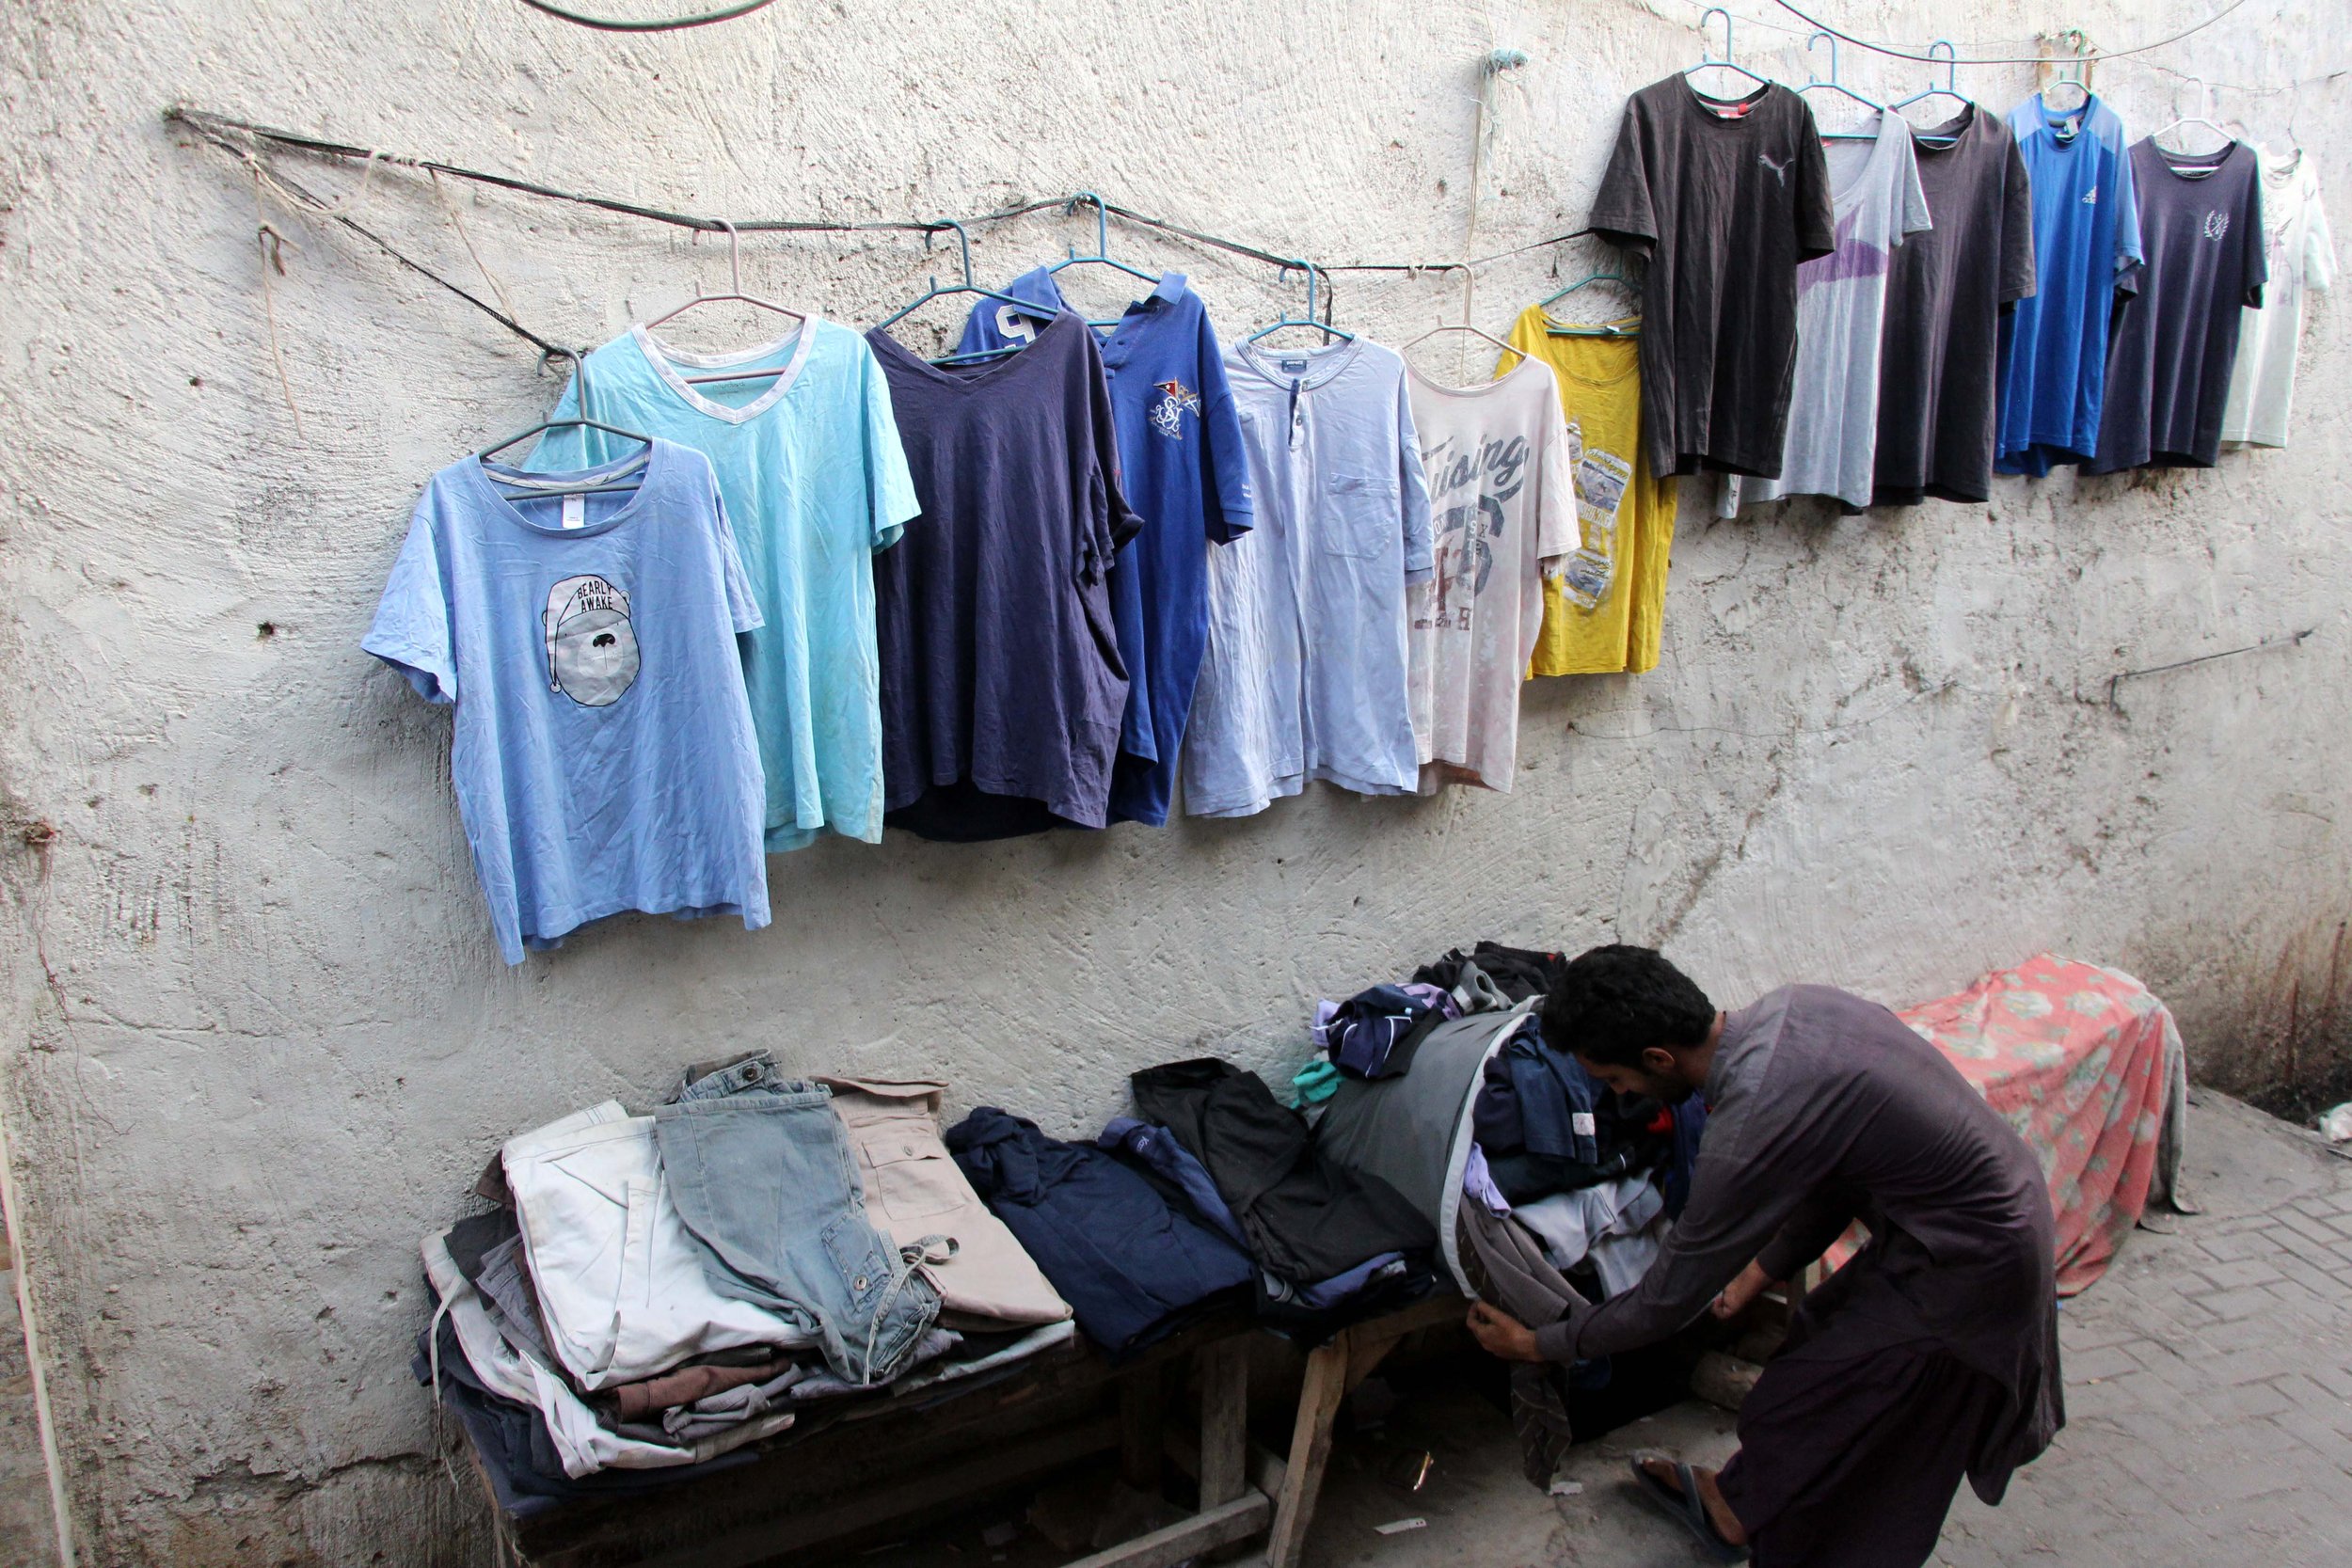  Drugače kot v skladiščih, kjer so obleke naložene v kupih, jih v Larkani, mestu severno od Karačija, razstavijo na stojnicah. Foto: Adil Jawad 